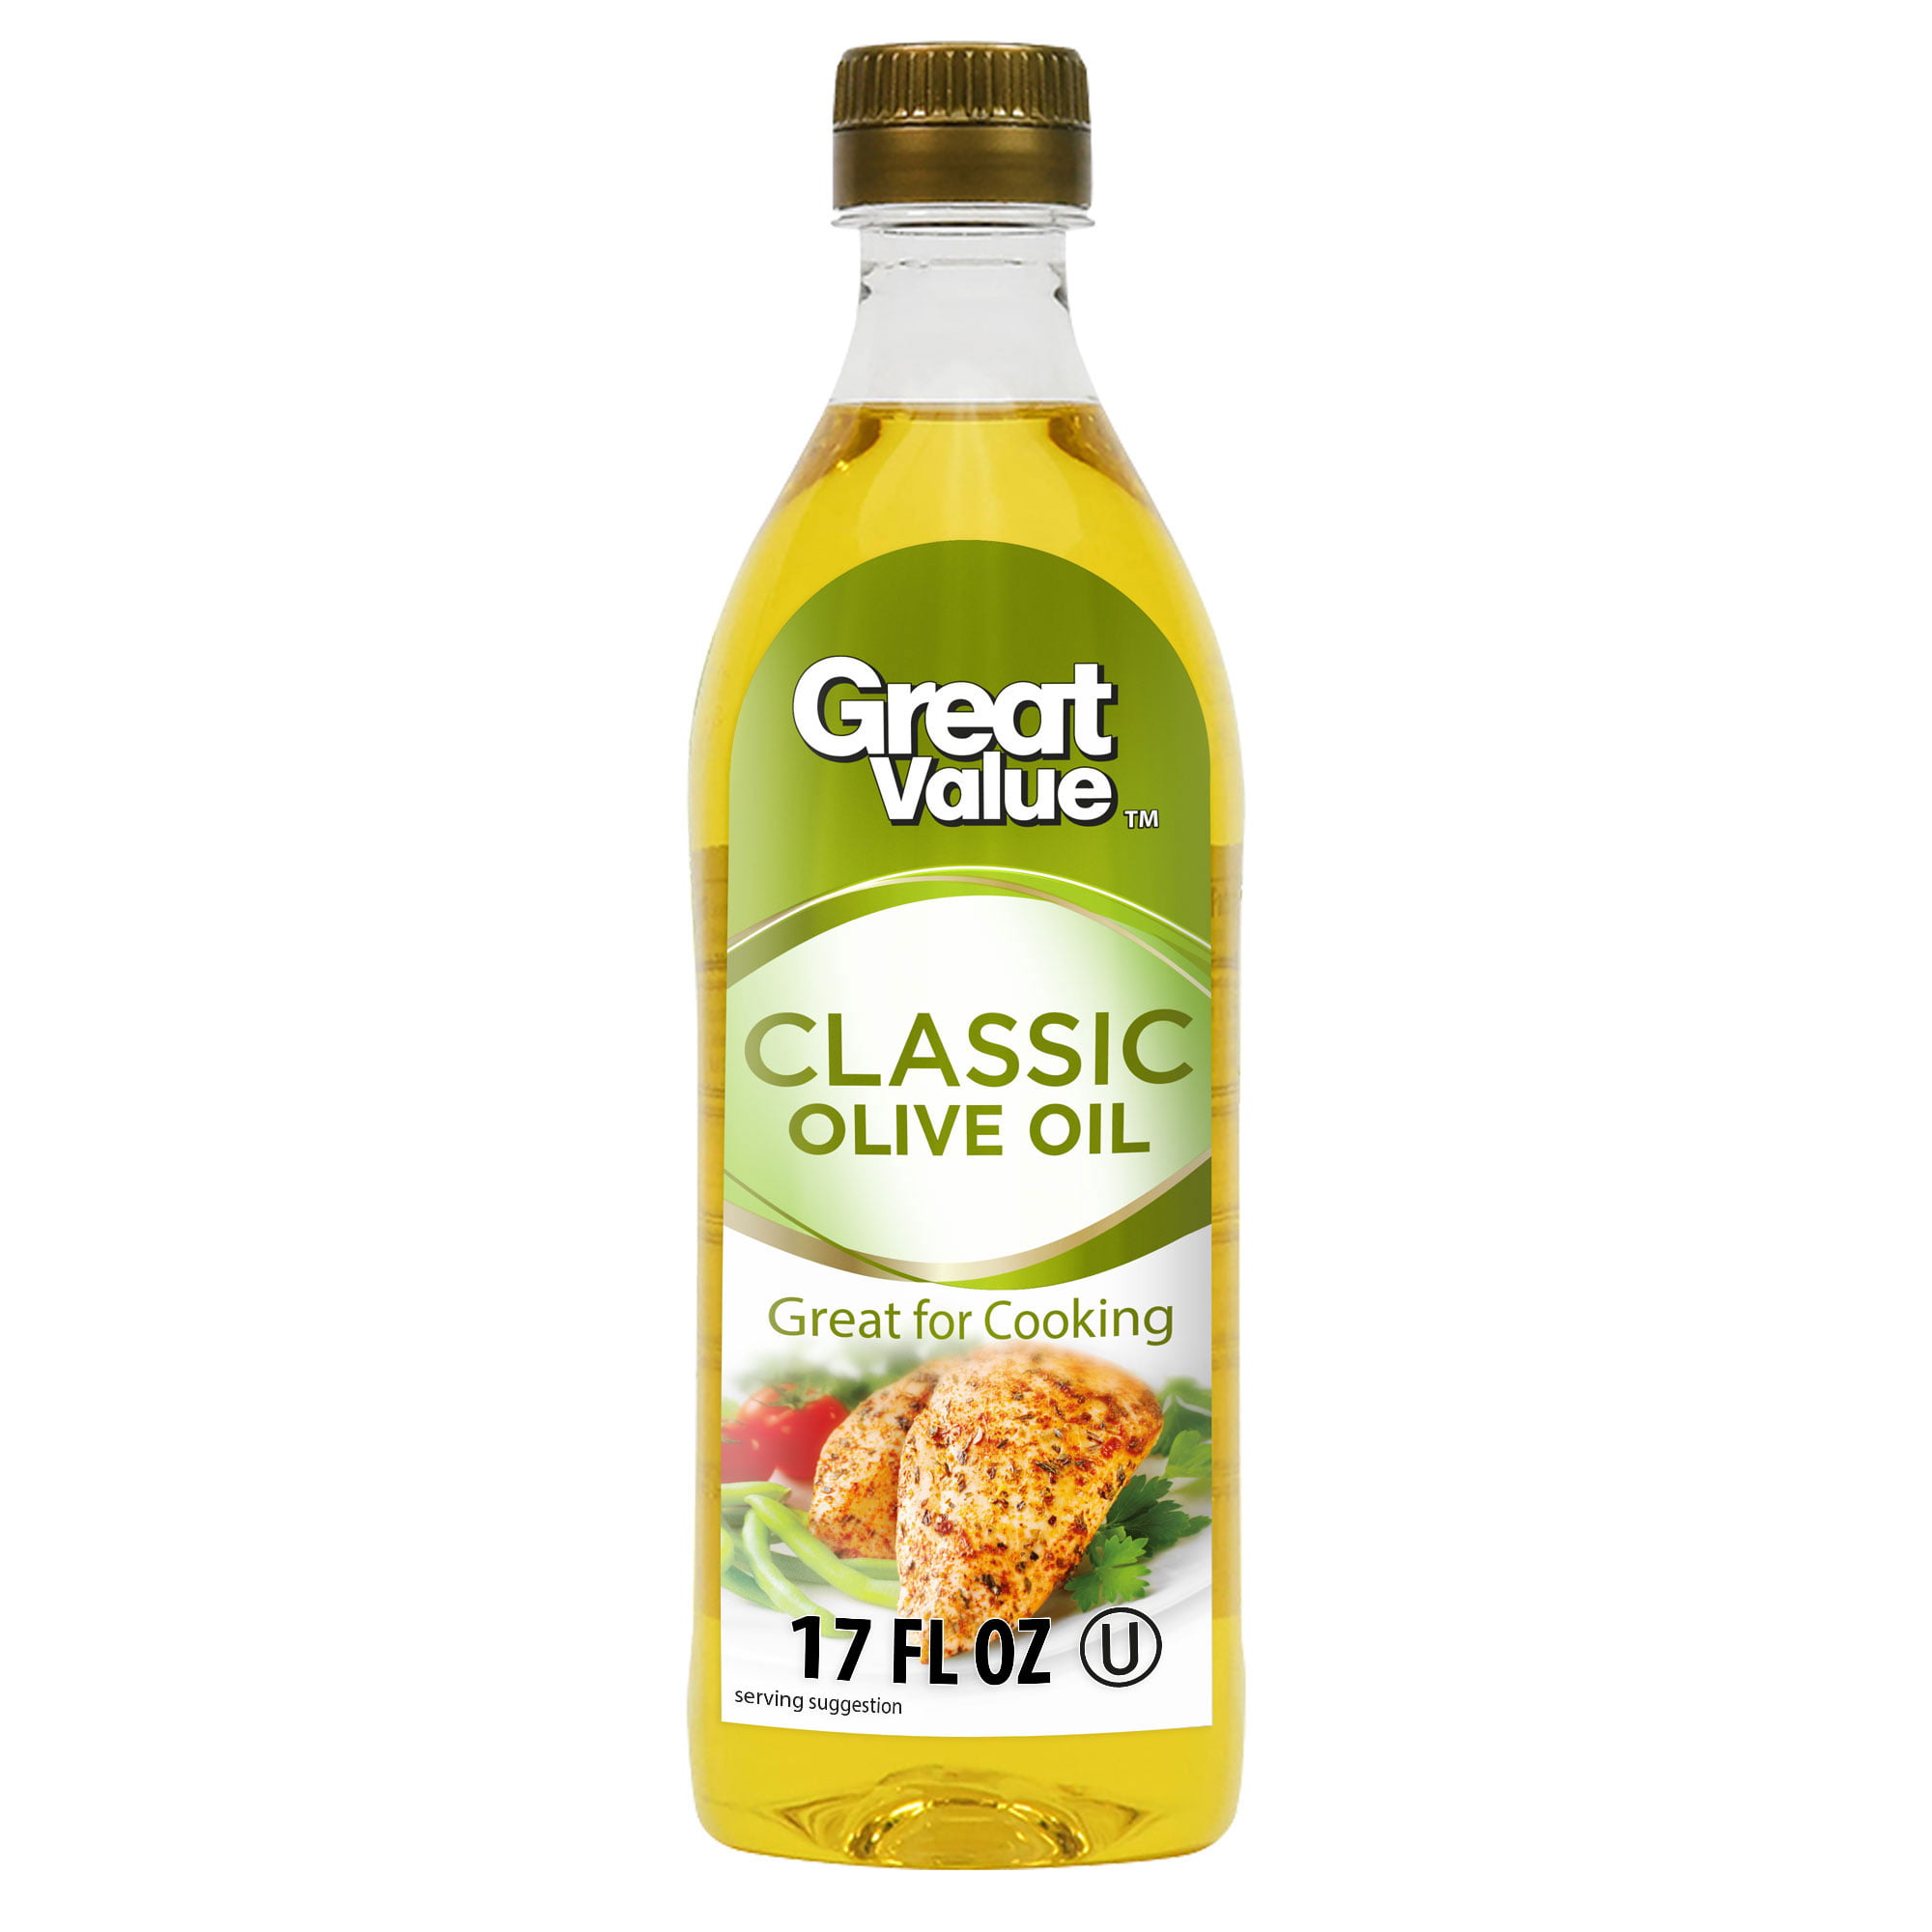 Great Value Classic Olive Oil 17 fl oz - Walmart.com - Walmart.com